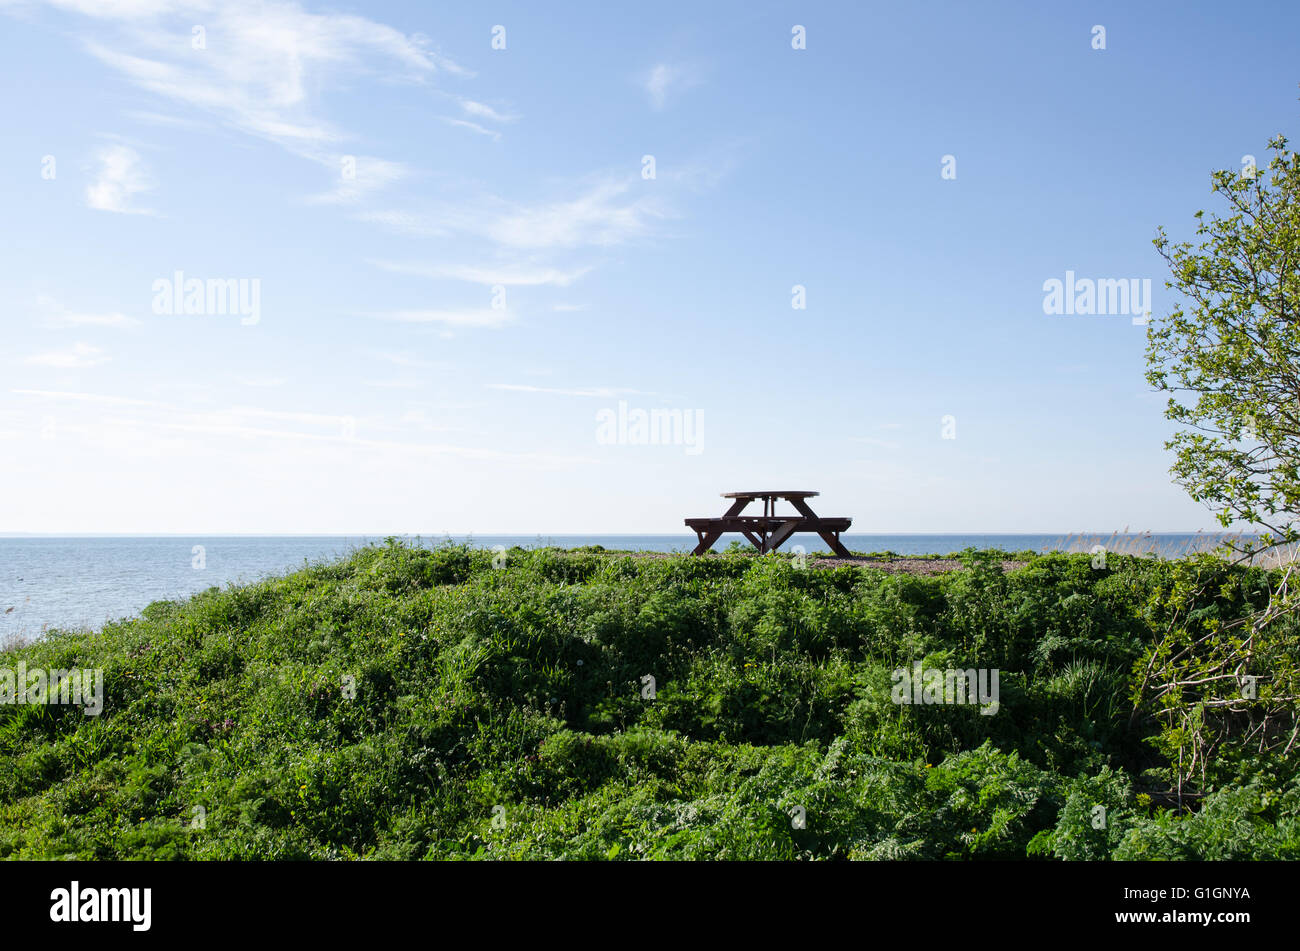 Banc en bois et table à un point de vue sur une colline de seaside au printemps Banque D'Images